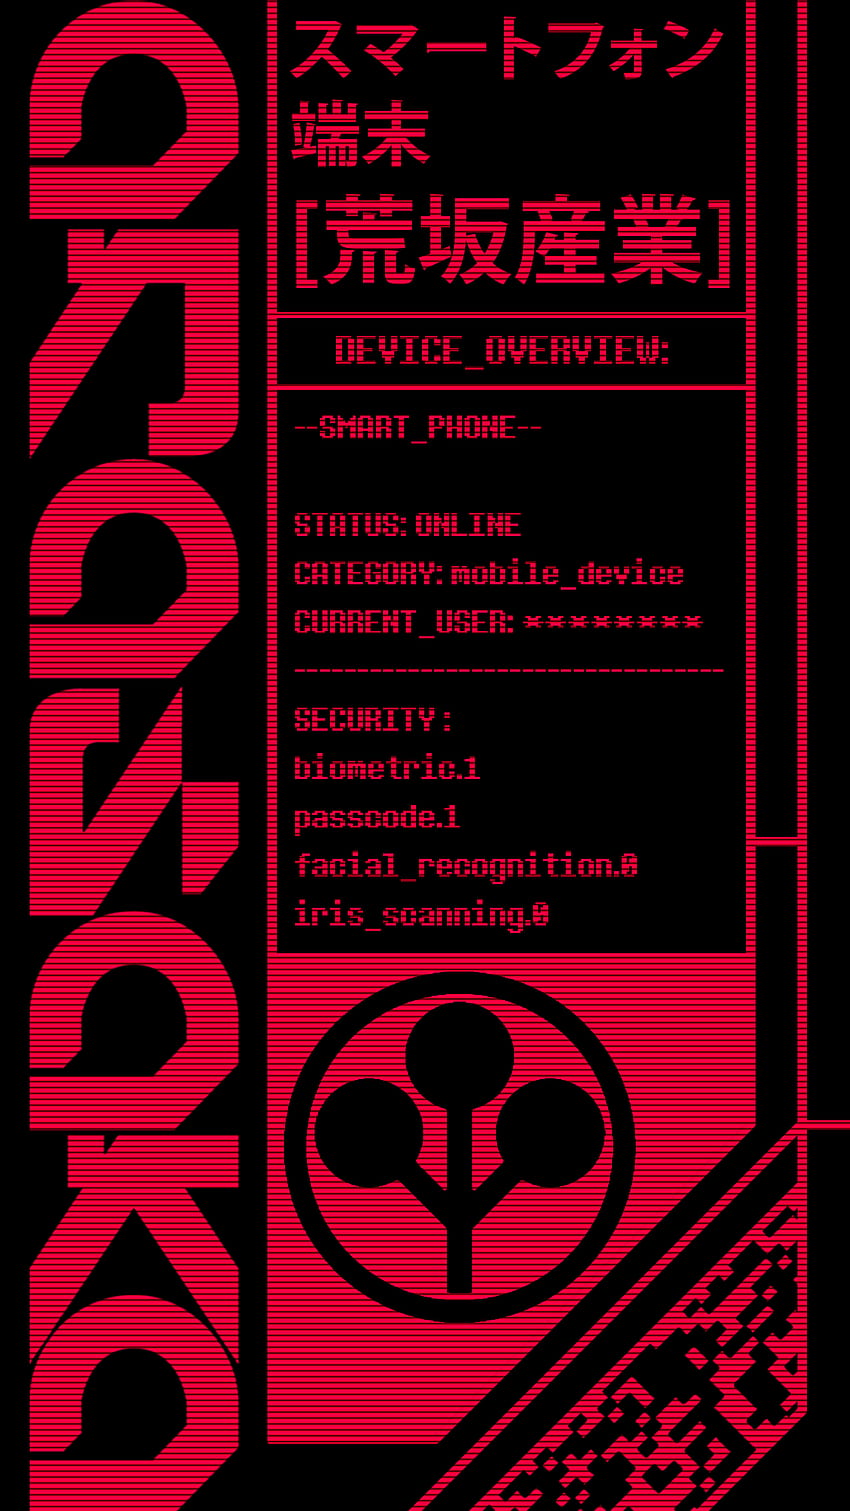 Cyberpunk 2077 temático Amoled que hice, teléfono cyberpunk 2077 fondo de pantalla del teléfono